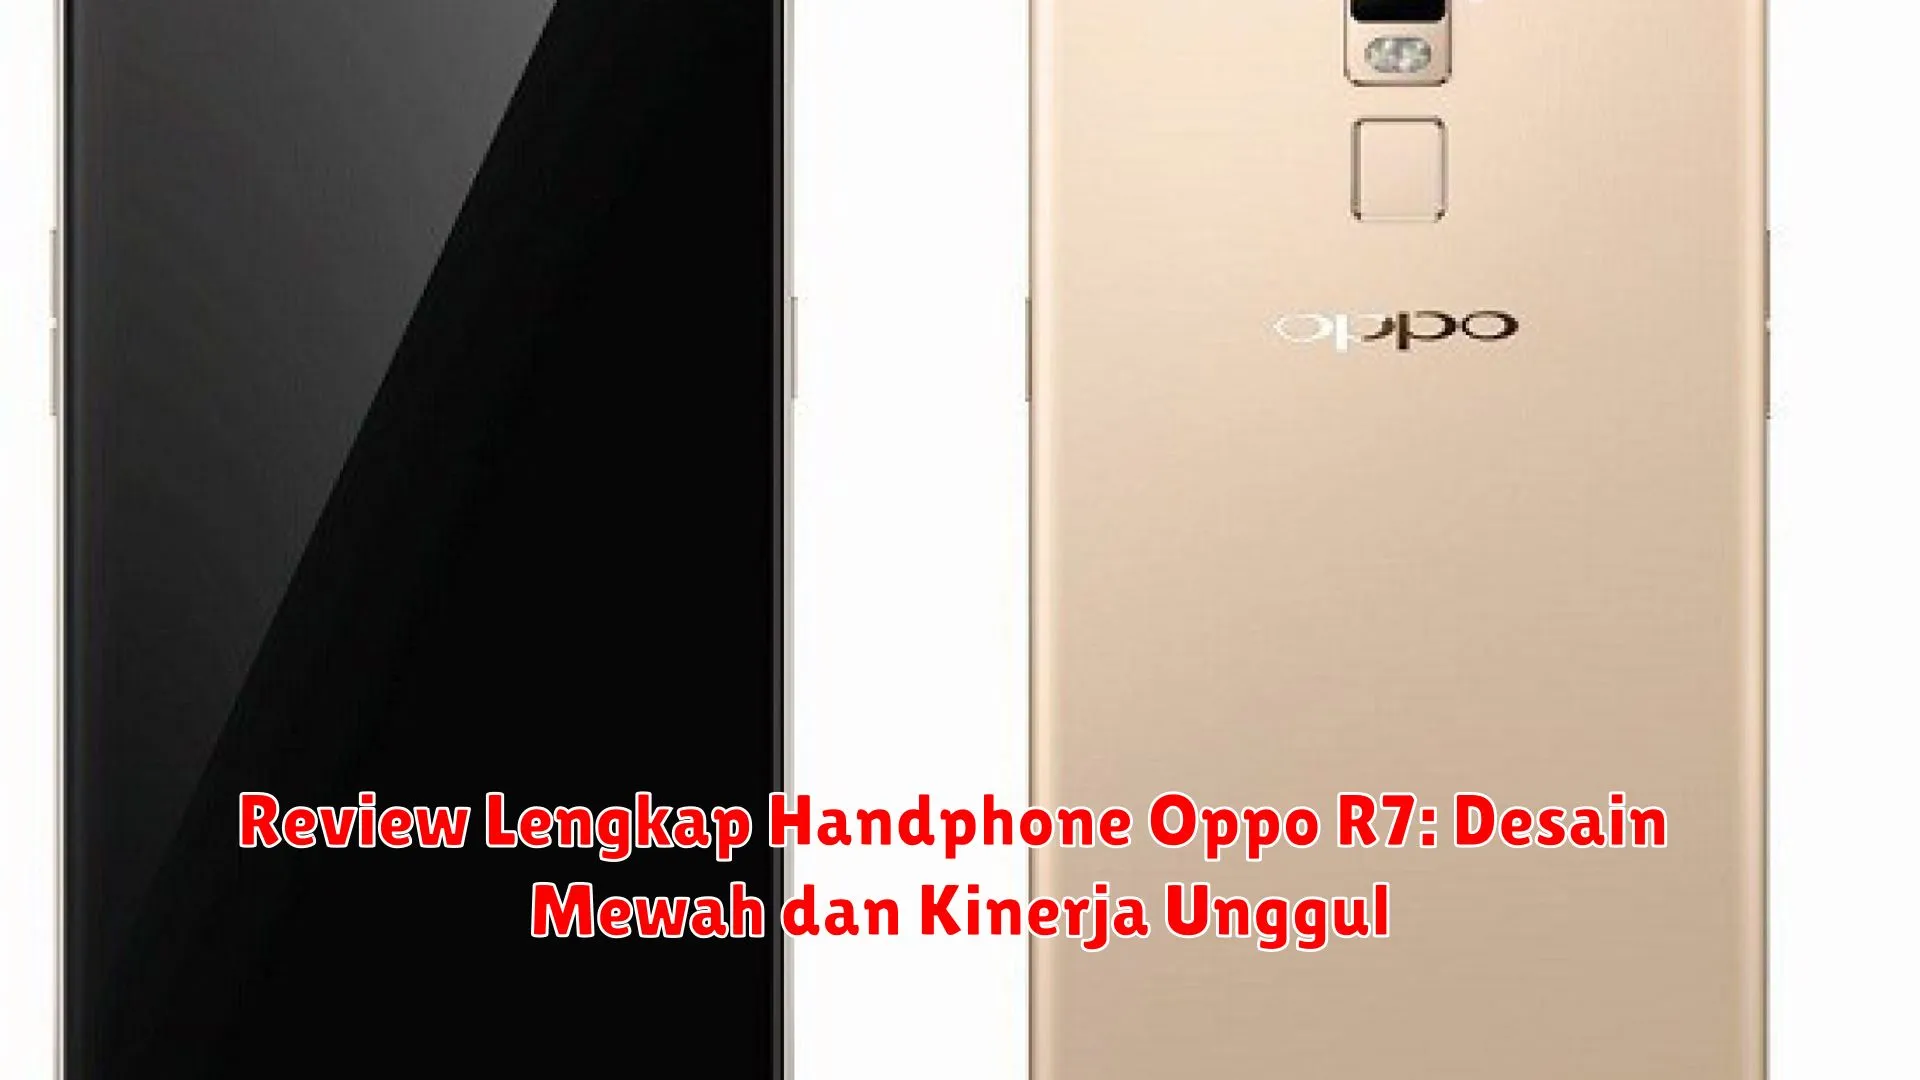 Review Lengkap Handphone Oppo R7: Desain Mewah dan Kinerja Unggul